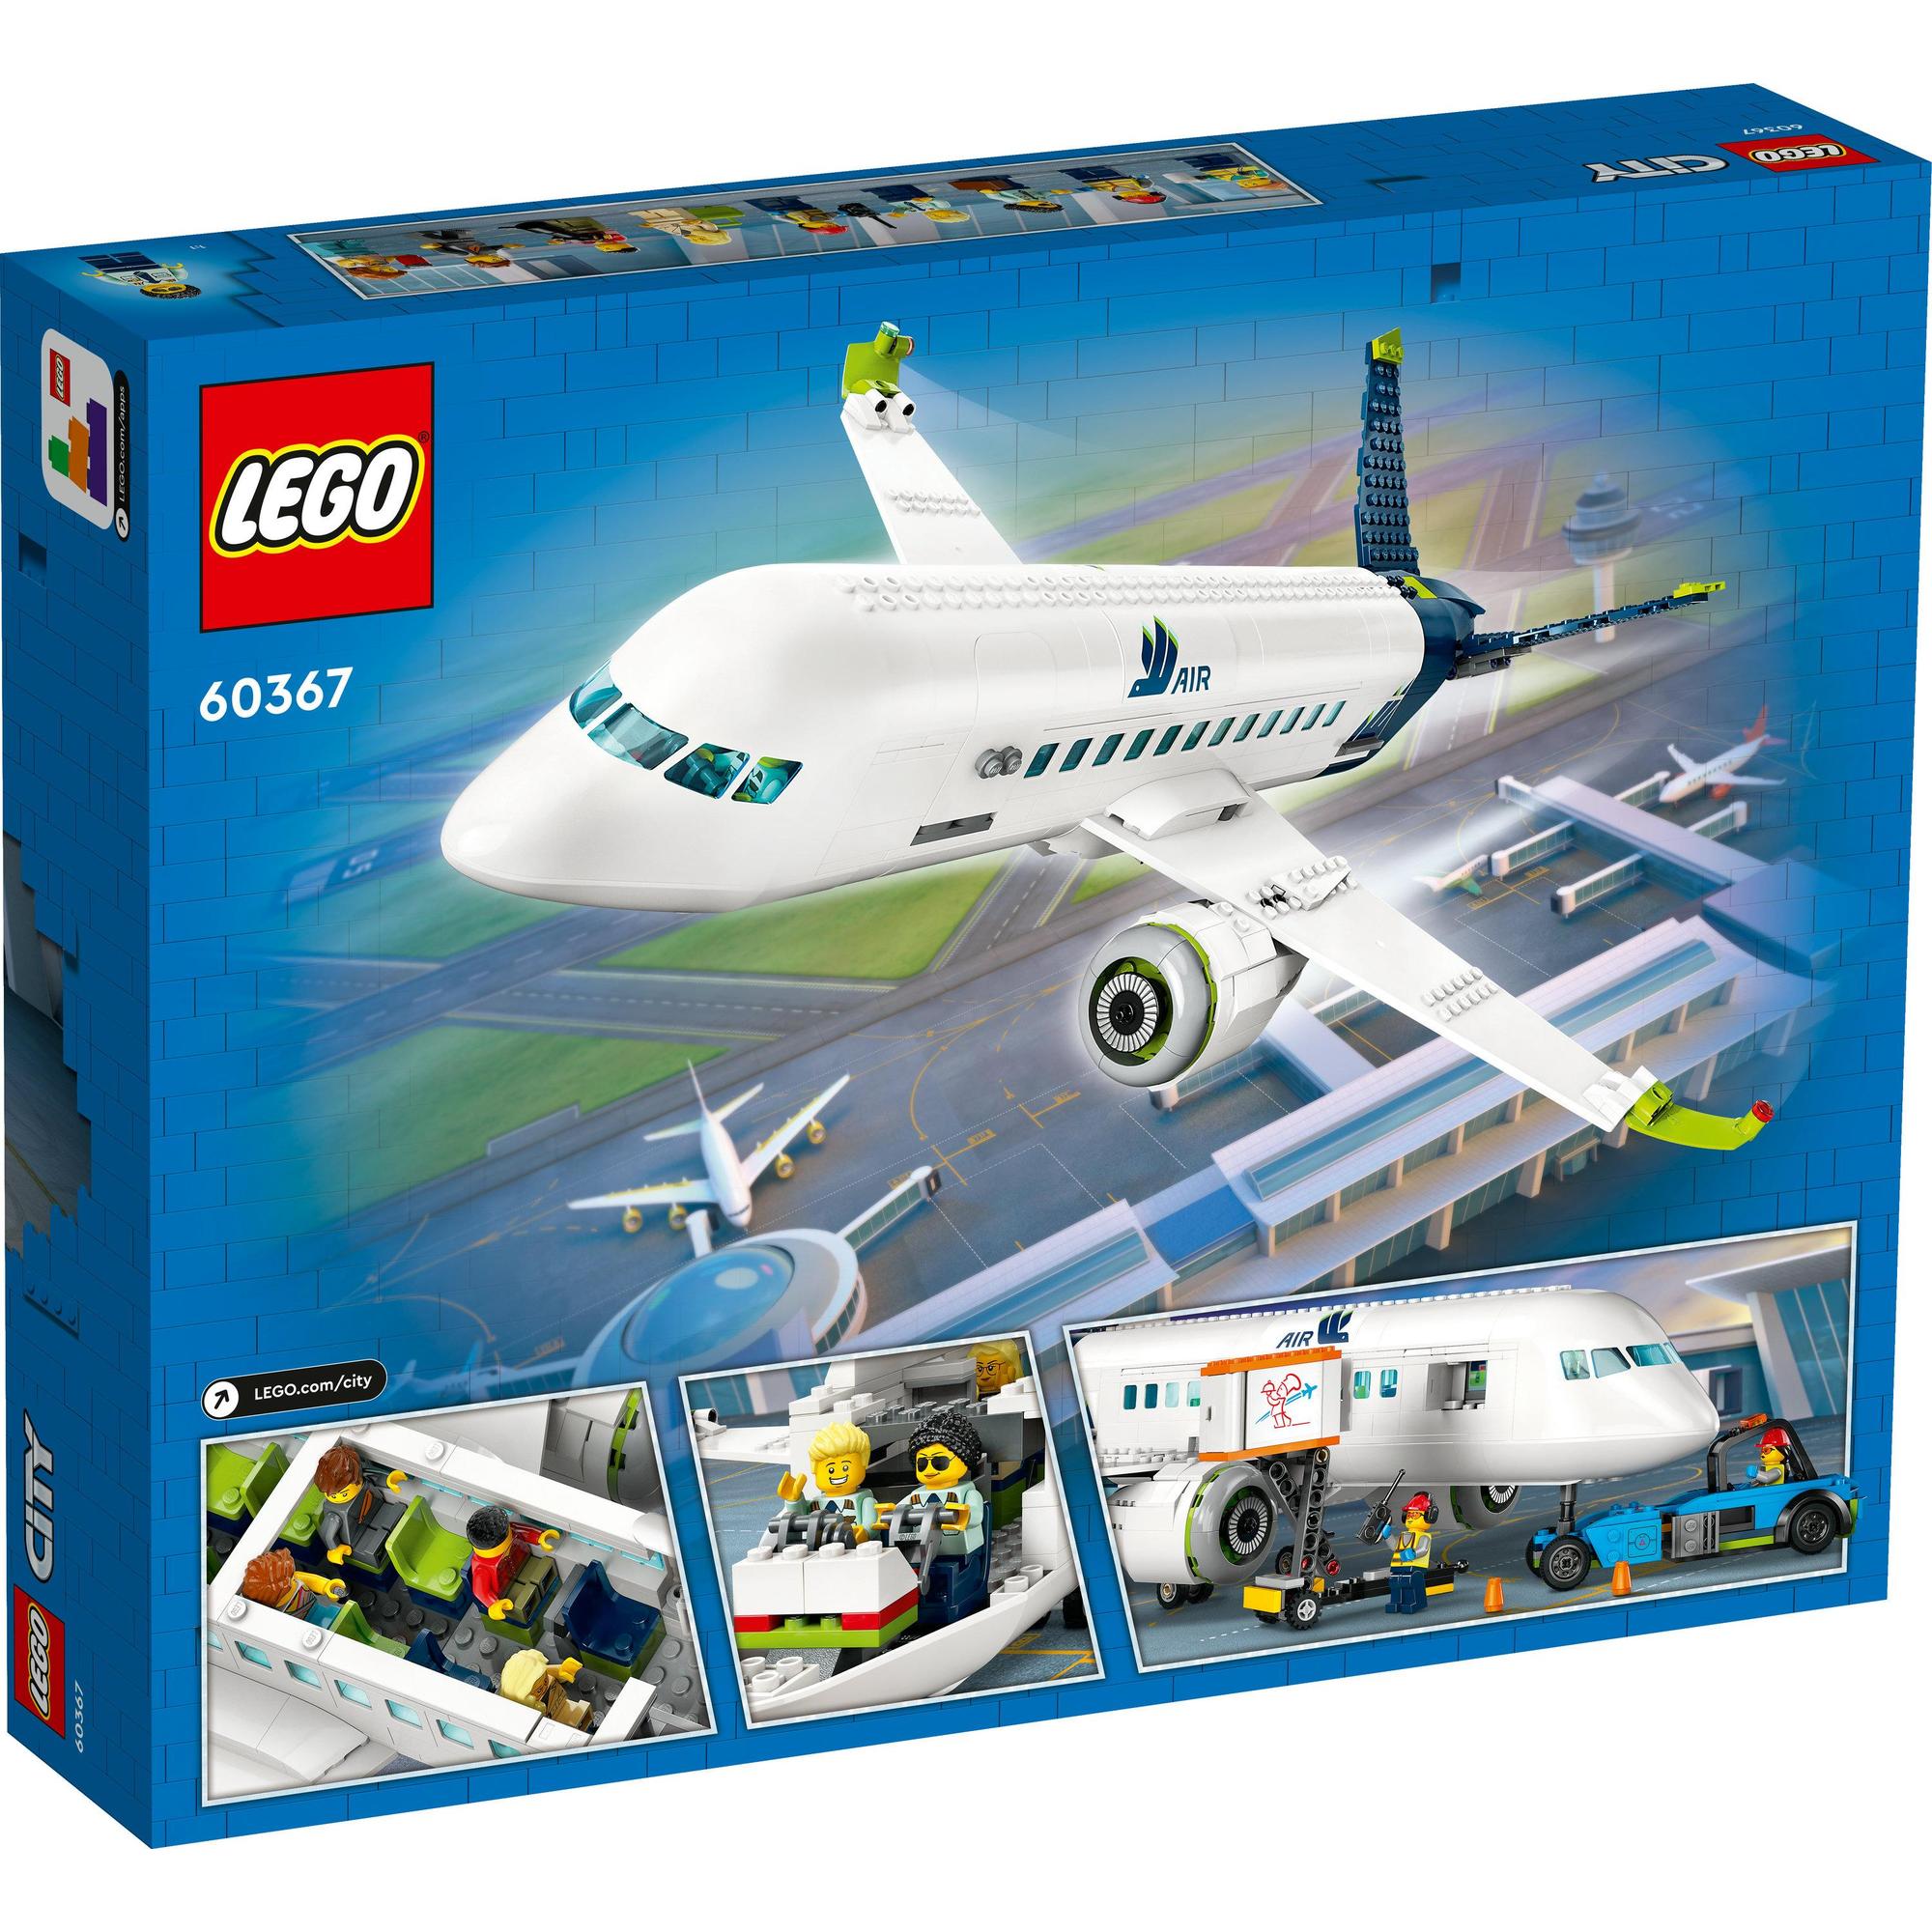 LEGO City 60367 Đồ chơi lắp ráp Máy bay chở hành khách (913 chi tiết)